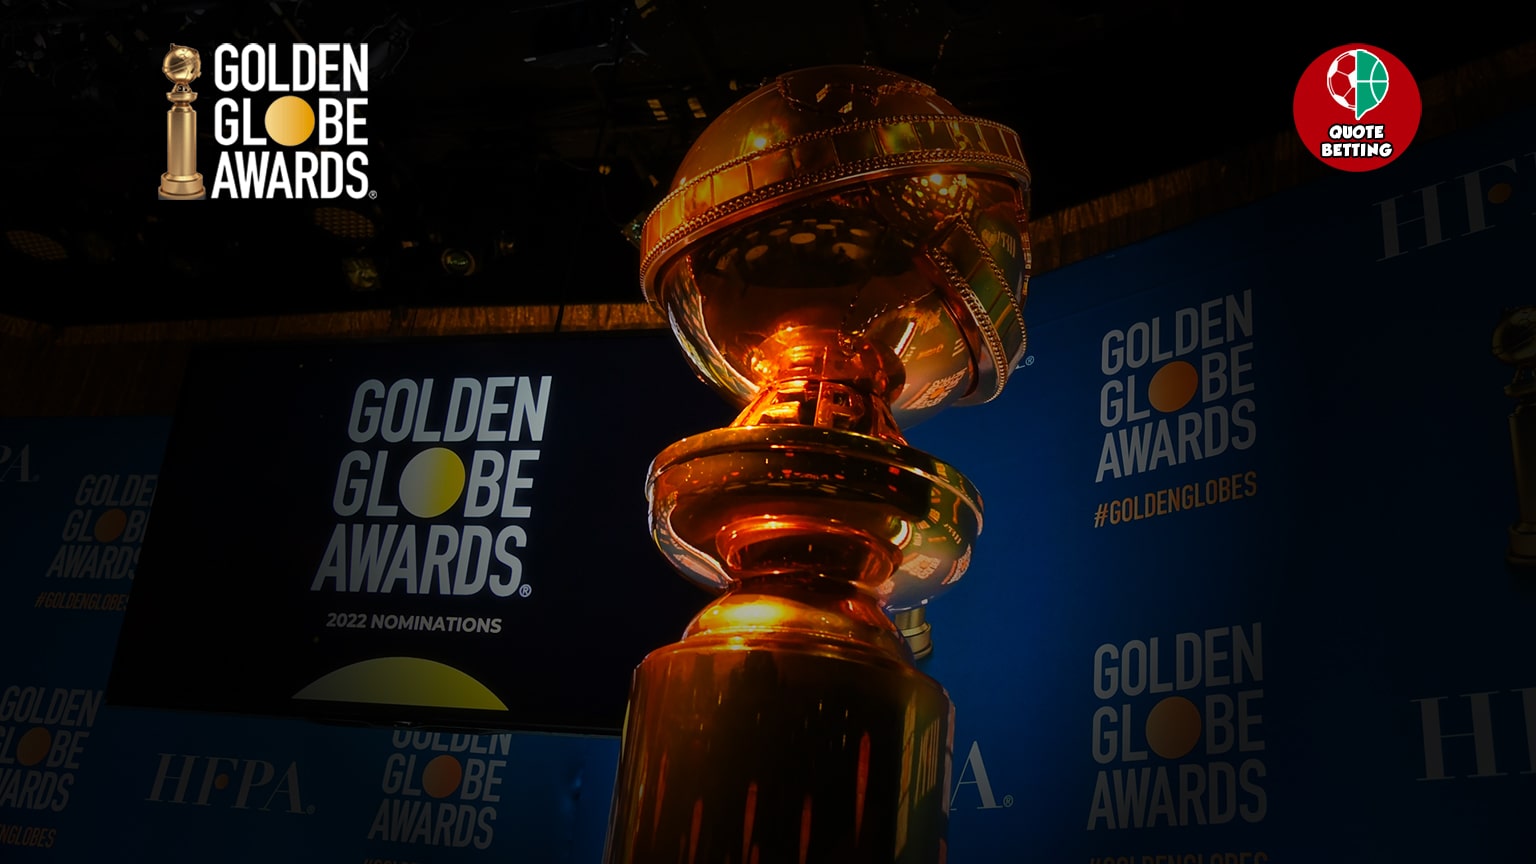 nomination golden globe 2022 awards miglior film west side story belfast